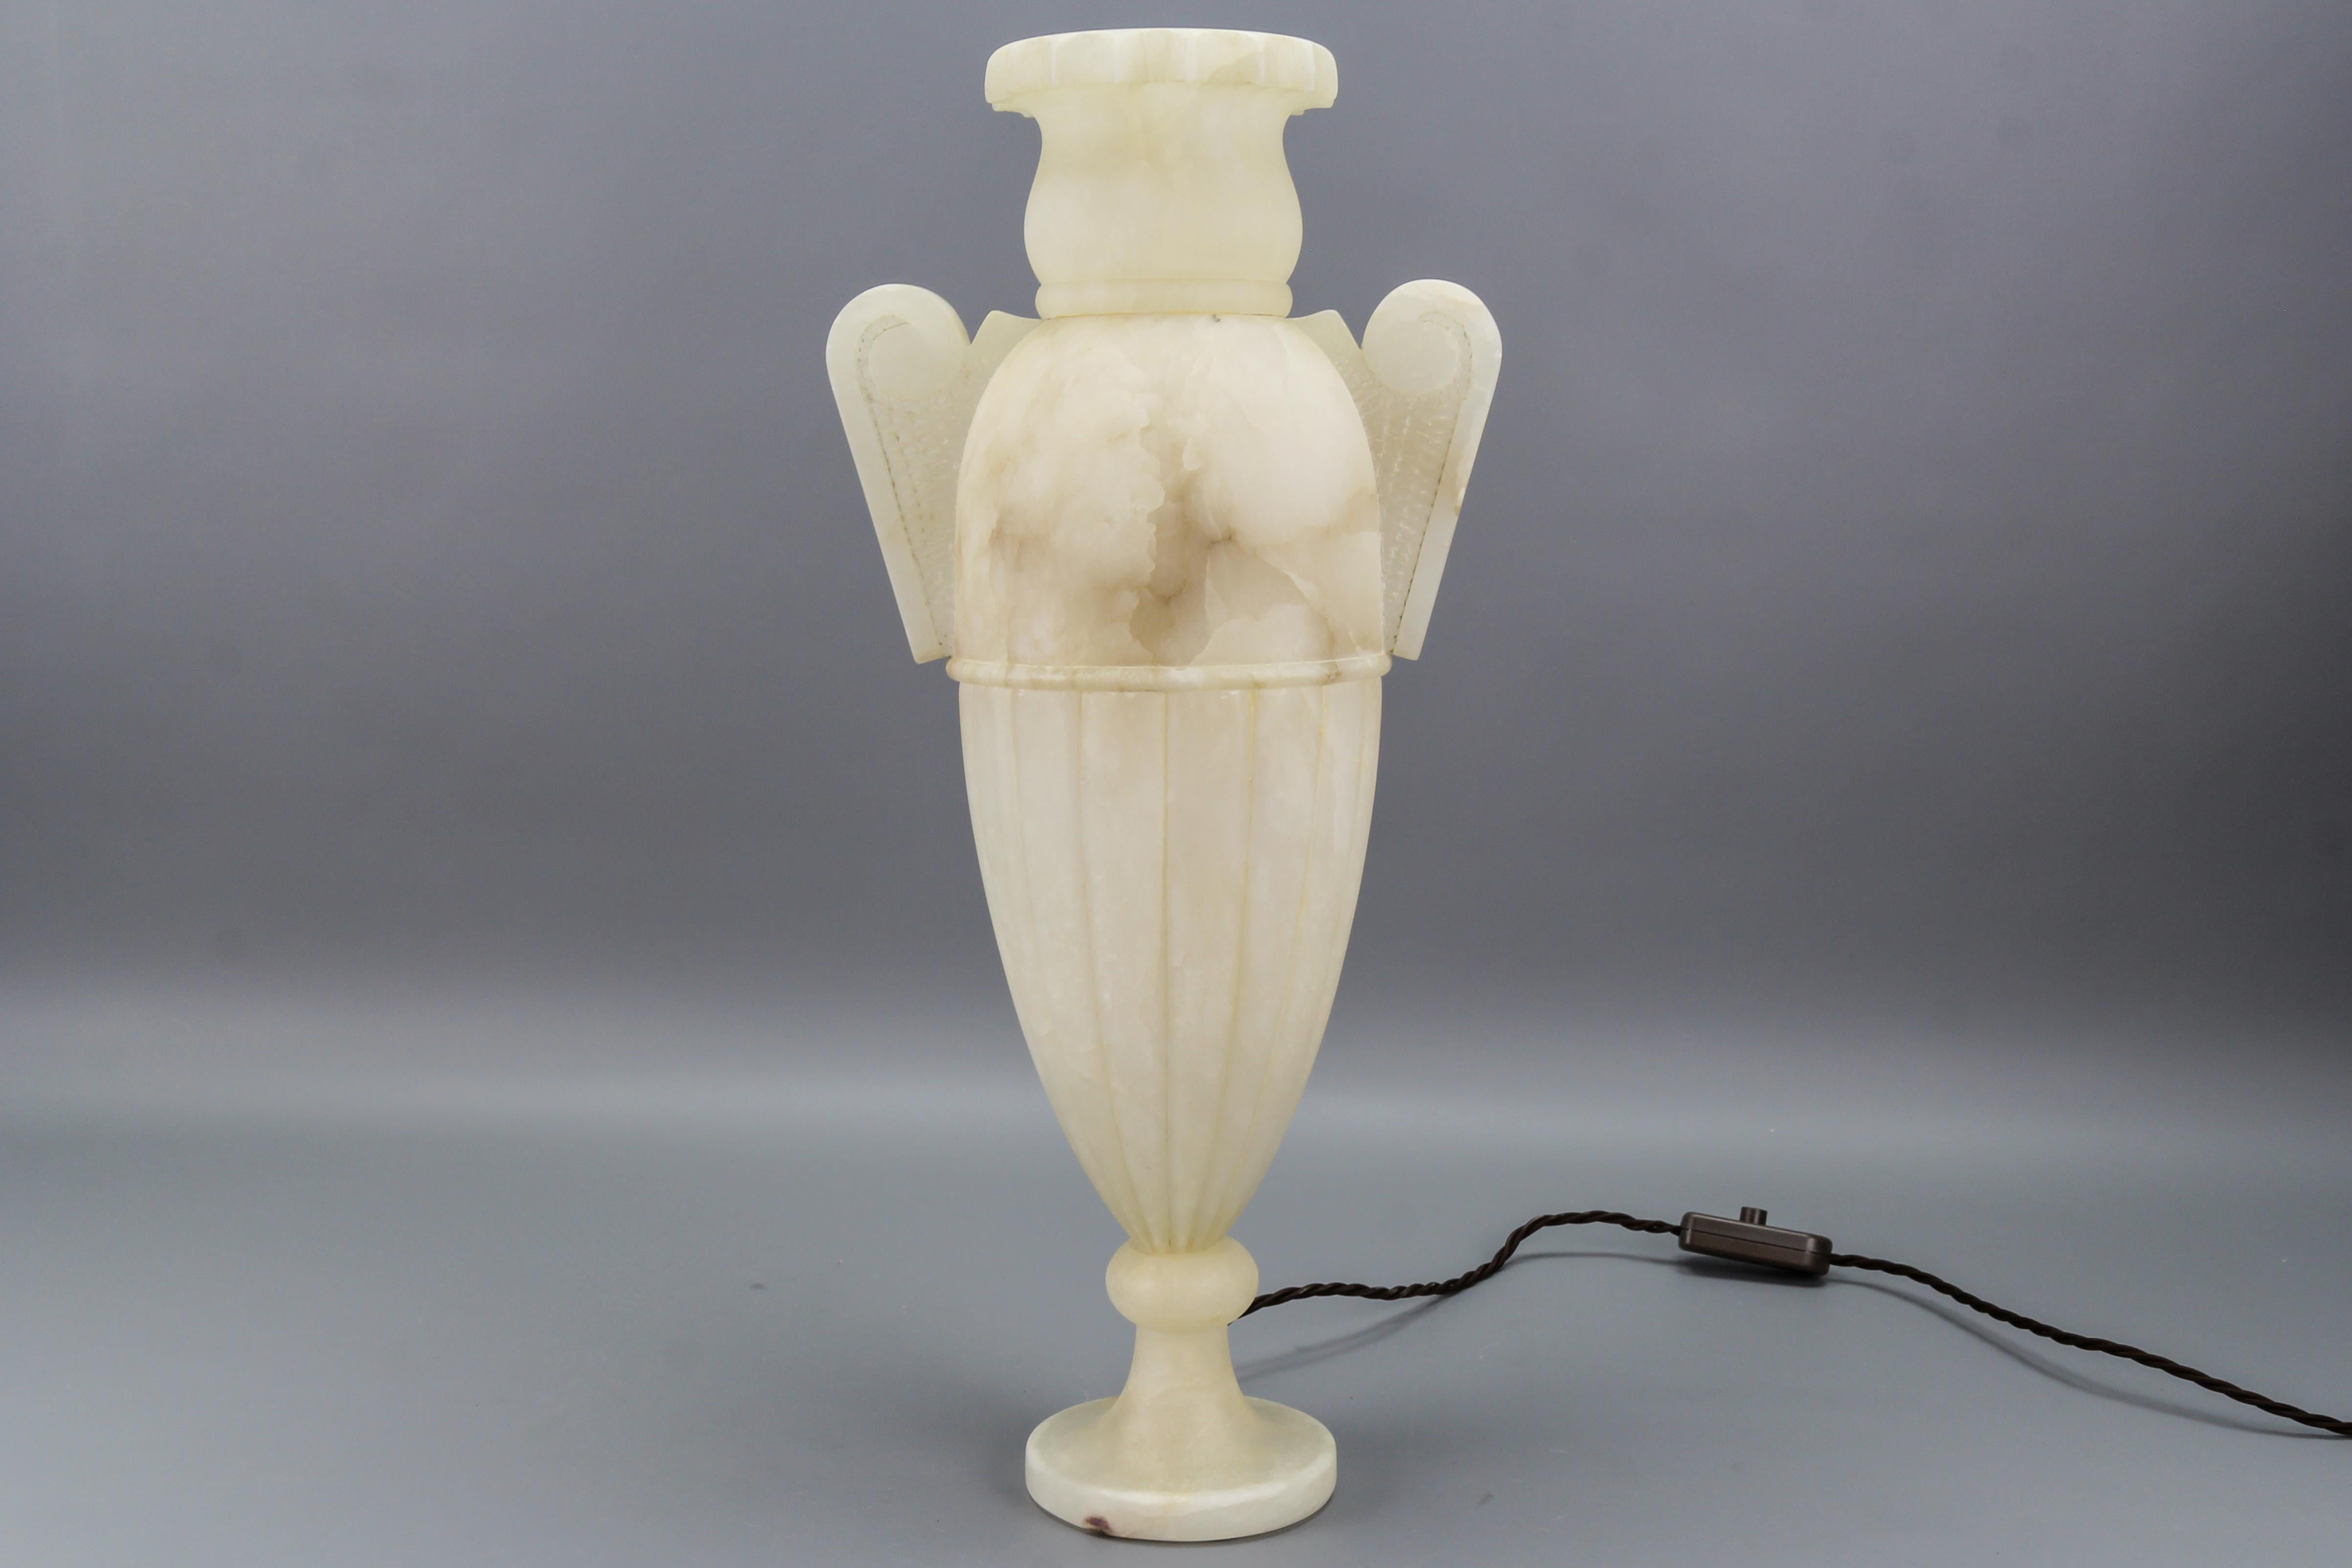 Lampe de style néoclassique en forme d'amphore en albâtre veiné ivoire et brun clair, Italie, vers les années 1930.
Impressionnante lampe italienne de style néoclassique en forme d'amphore, réalisée en albâtre magnifiquement veiné. La lampe s'allume